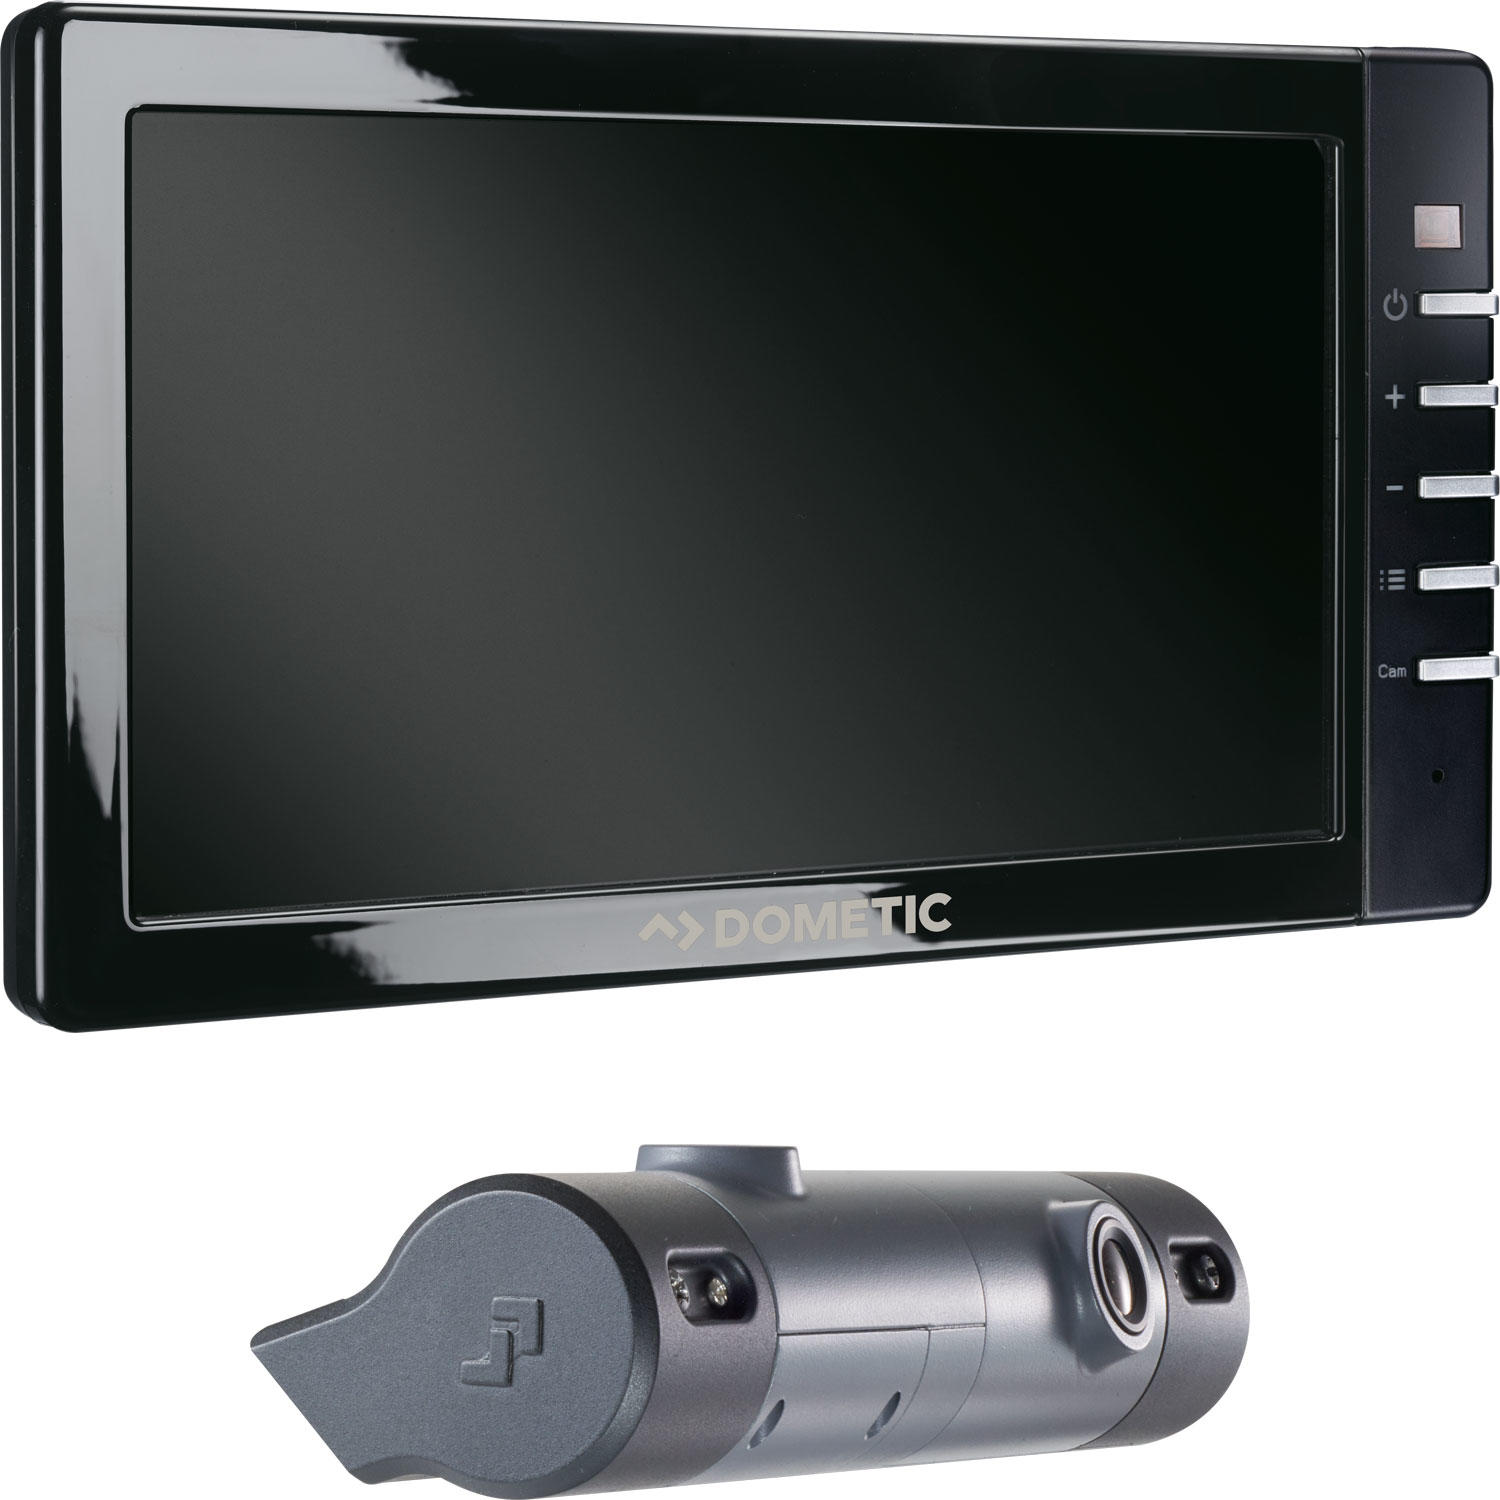 Dometic RVS5200 Rückfahrsystem mit 5" Monitor und Rückfahrkamera